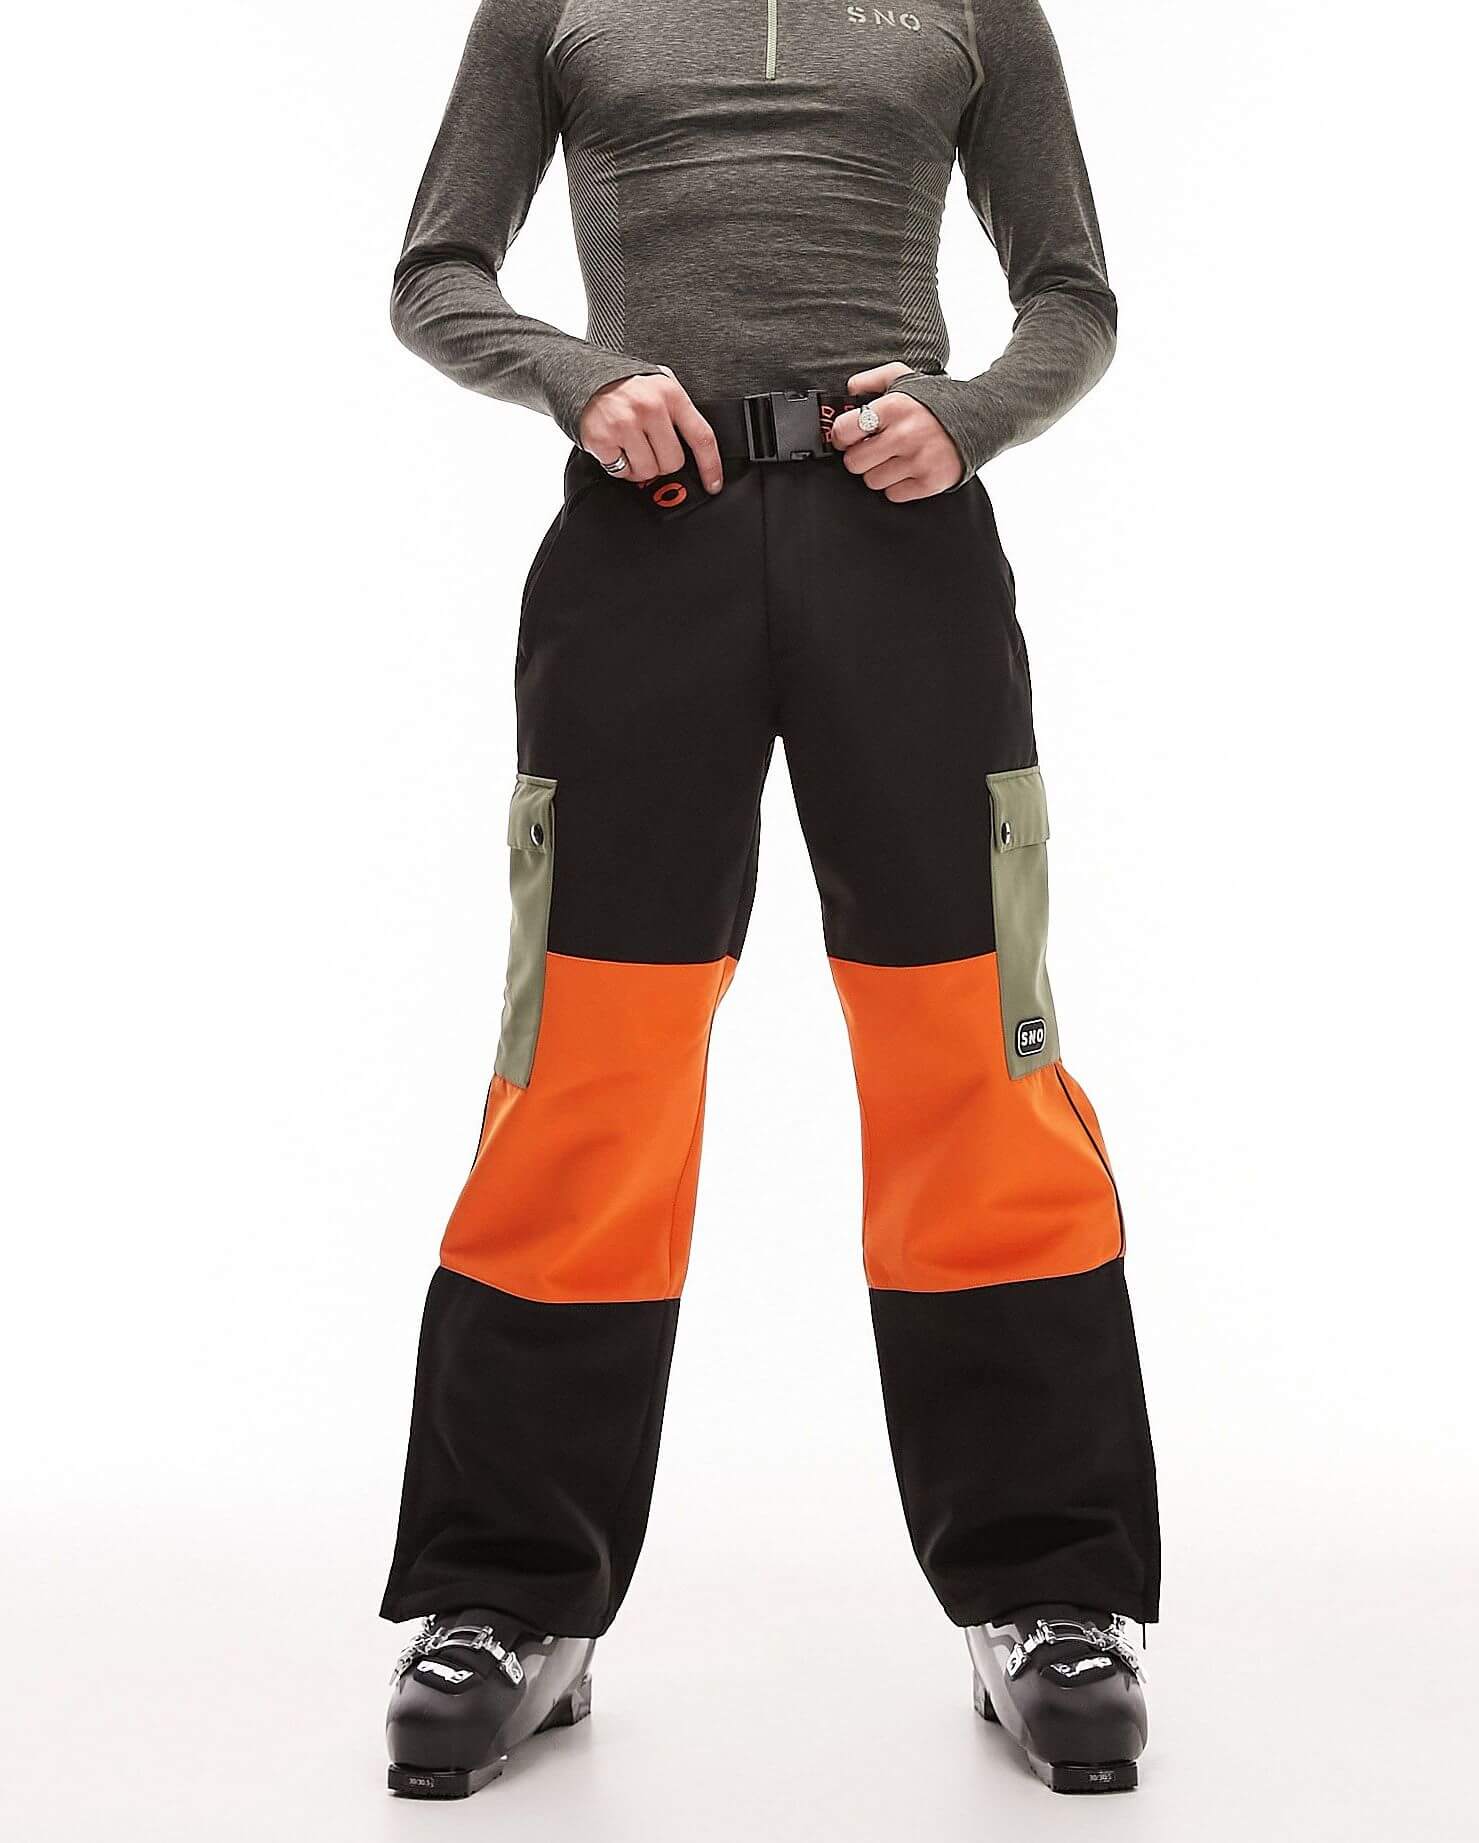 снегокат hamax sno blade черный Горнолыжные брюки Topman Sno Boarder In Colour Block, оранжевый/черный/зеленый